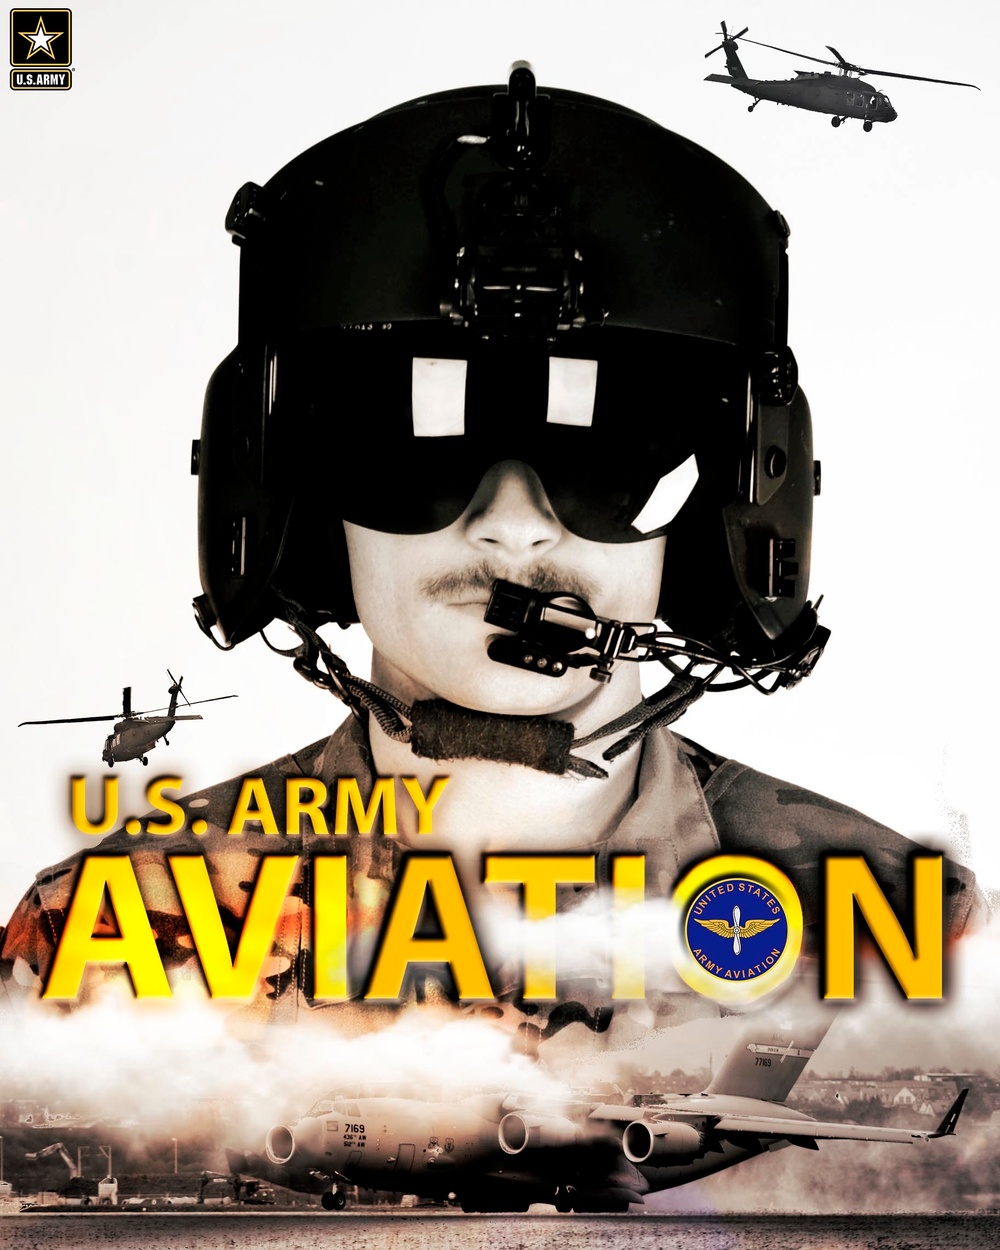 U.S. Army Aviation!